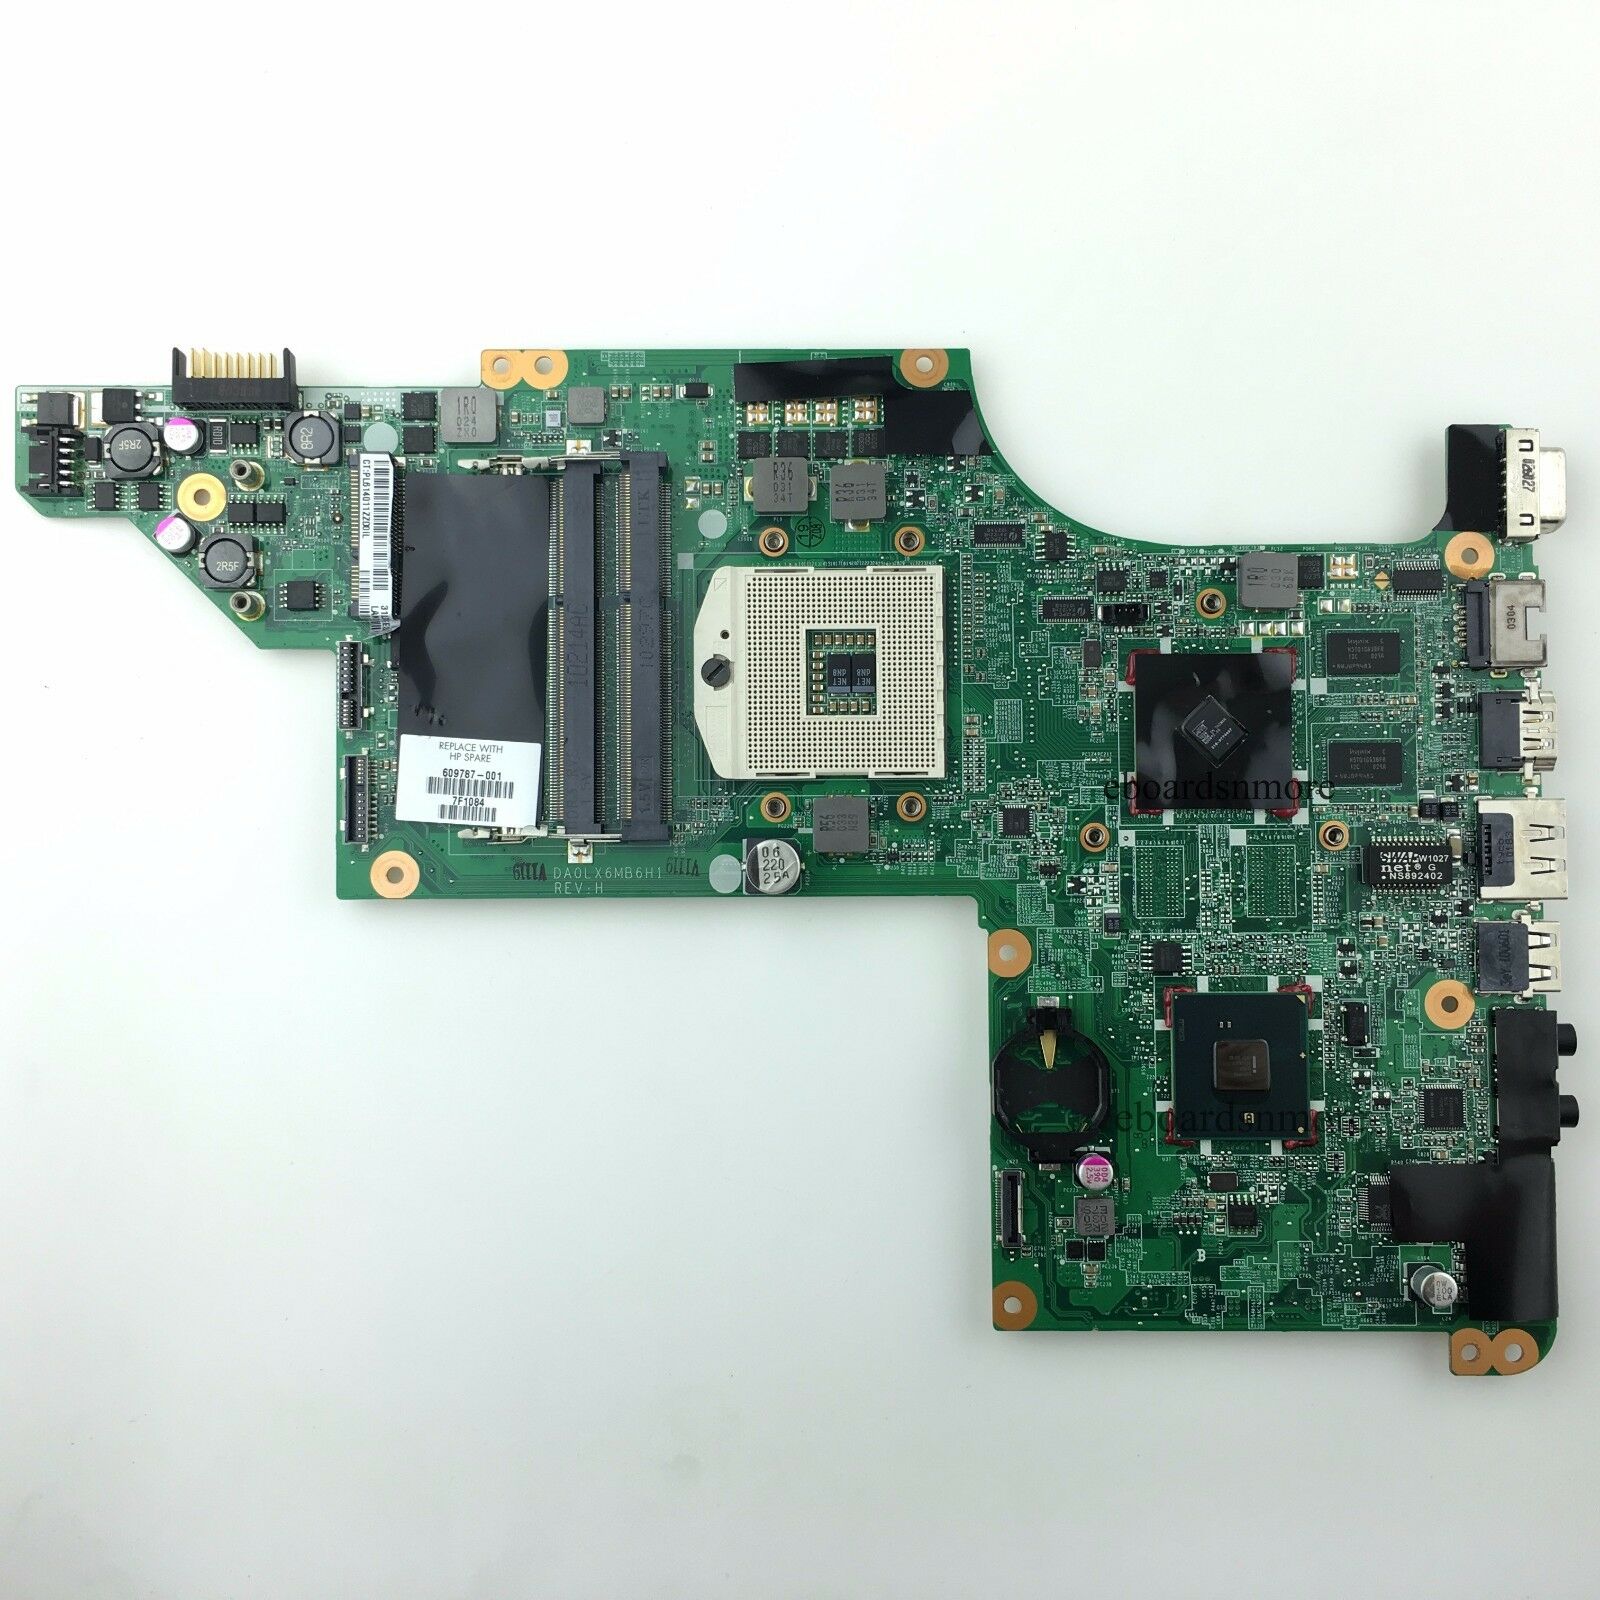 609787-001 for HP DV7 DV7-4000 motherboard,ATI 216-0774007,DA0LX6MB6H1,Grade A Memory Type: See Description